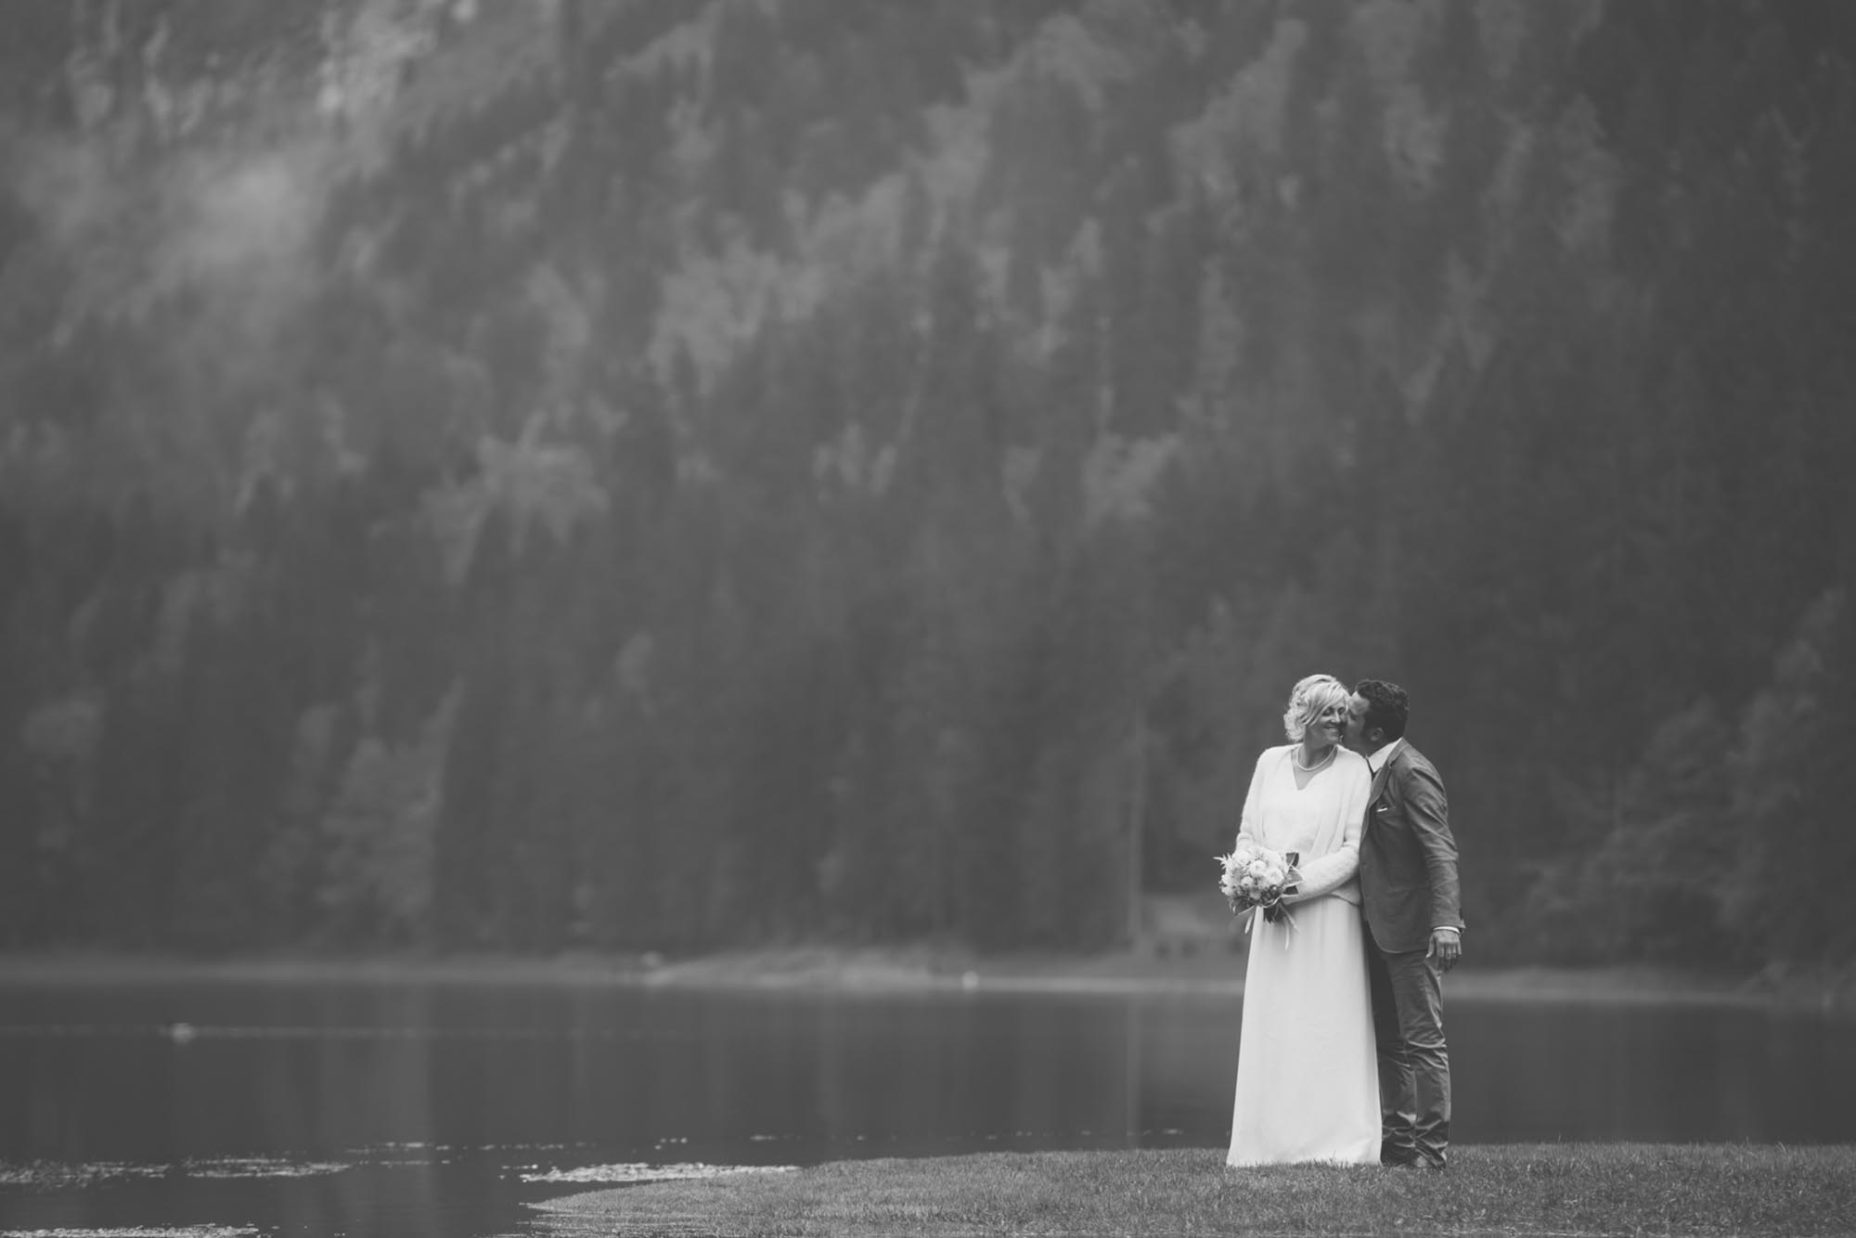 photographe mariage maldeme lac montriond montagne haute savoie